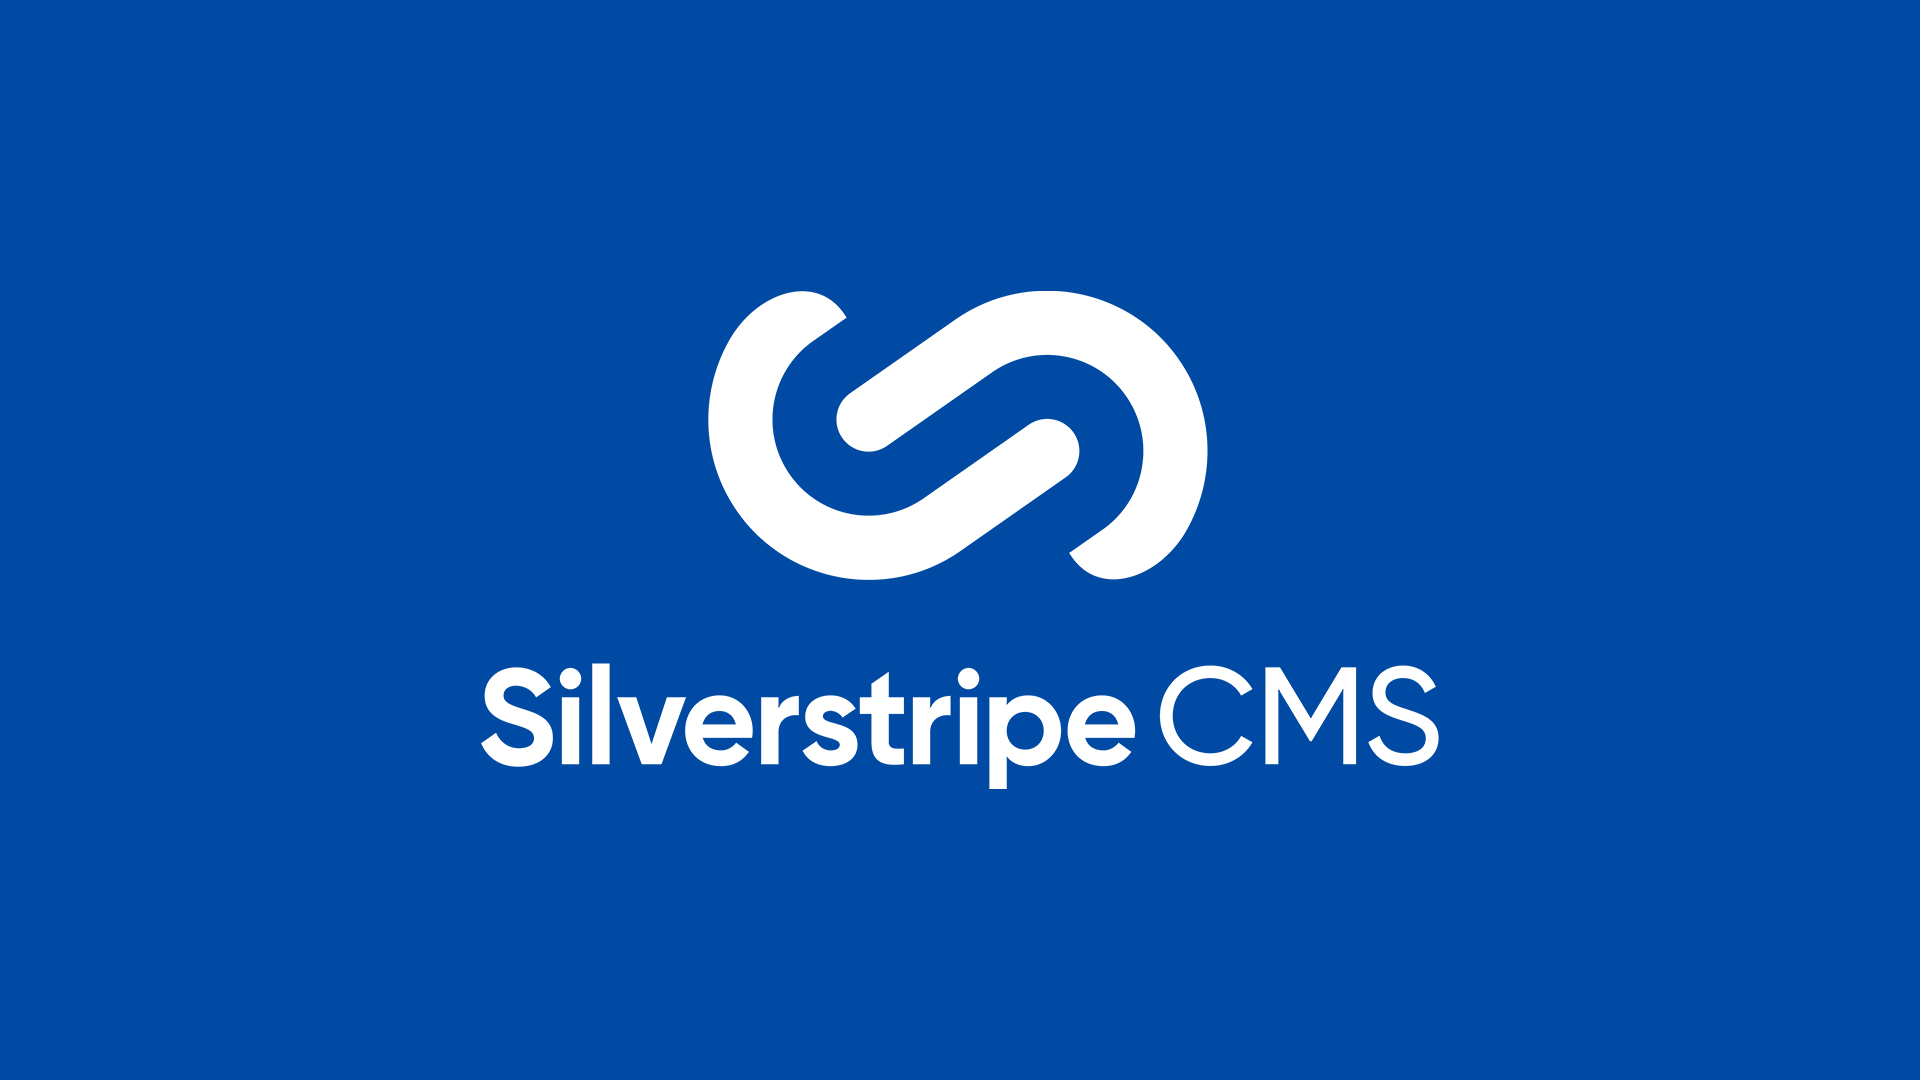 Enterprise CMS Platforms: Silverstripe